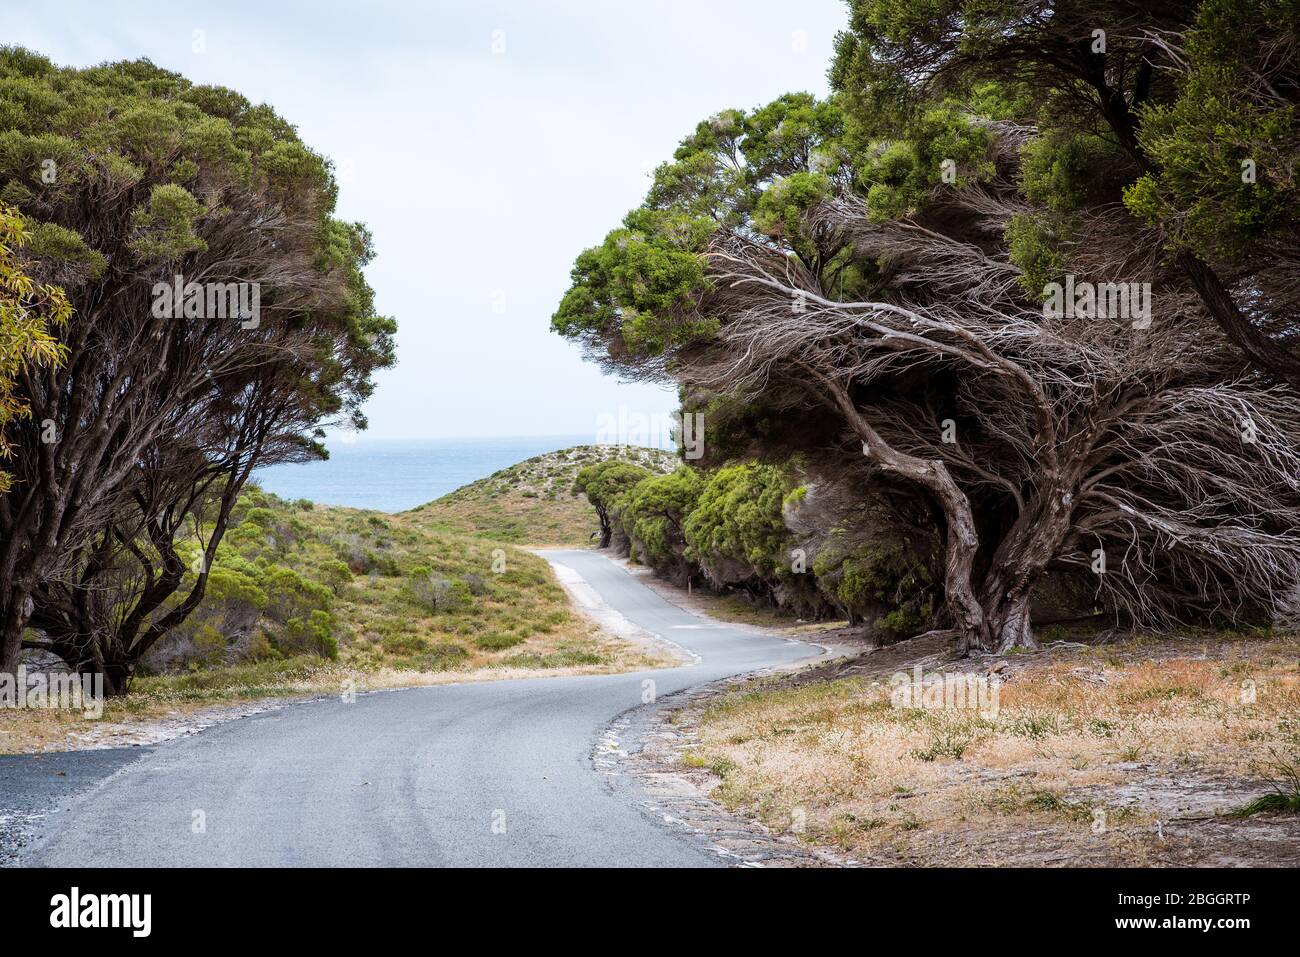 Chemin d'asphalte tortueux bordé d'anciens théières tortueuses, d'arbustes verts et de buissons sur l'île Rottnest, en Australie occidentale. Paysage naturel pittoresque Banque D'Images